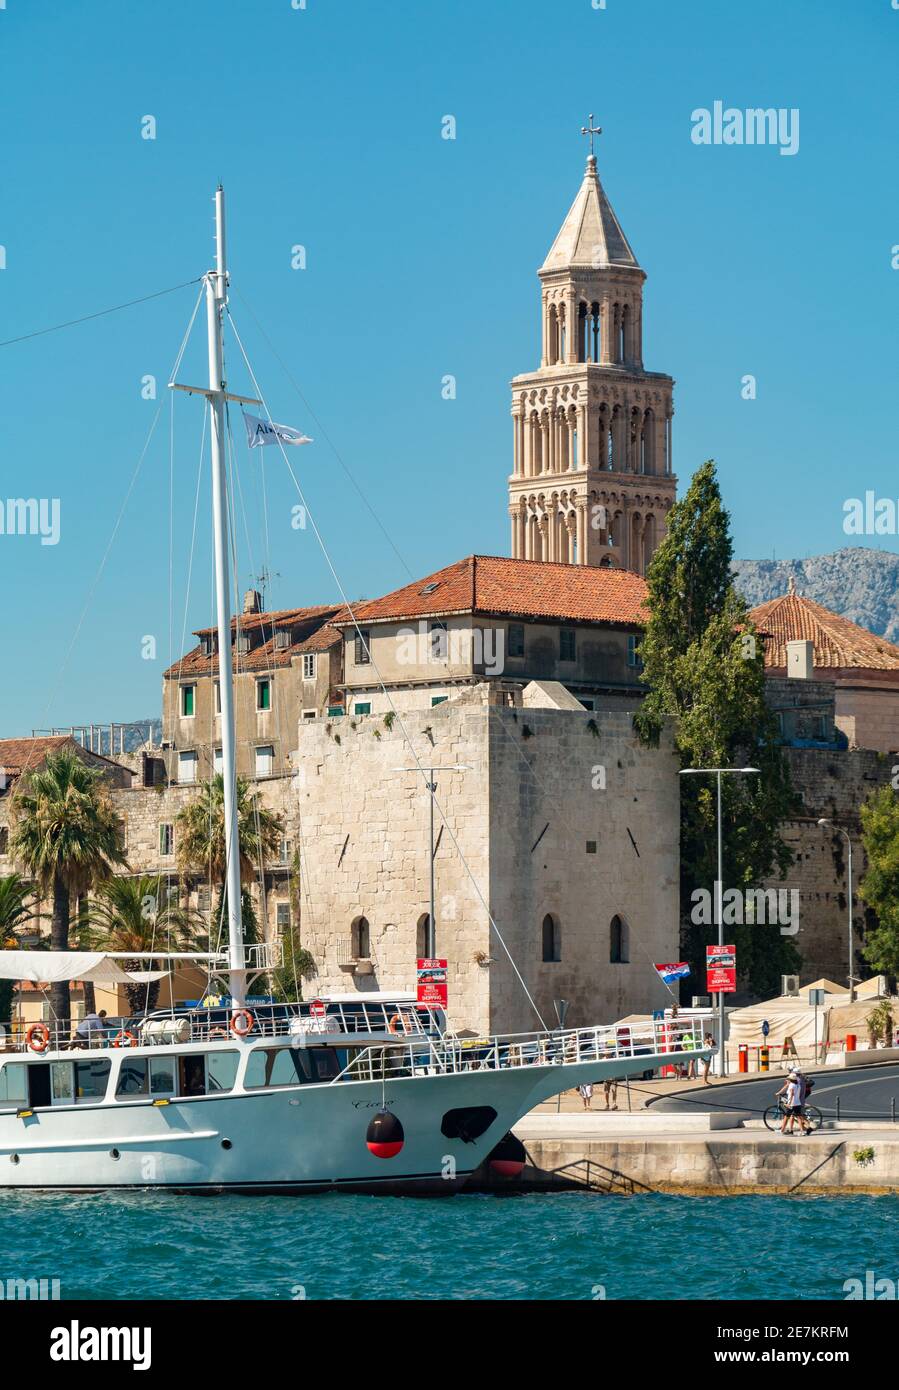 Una imagen del paseo marítimo de Split, con la torre de la Catedral de San Domnio que mira a los edificios. Foto de stock